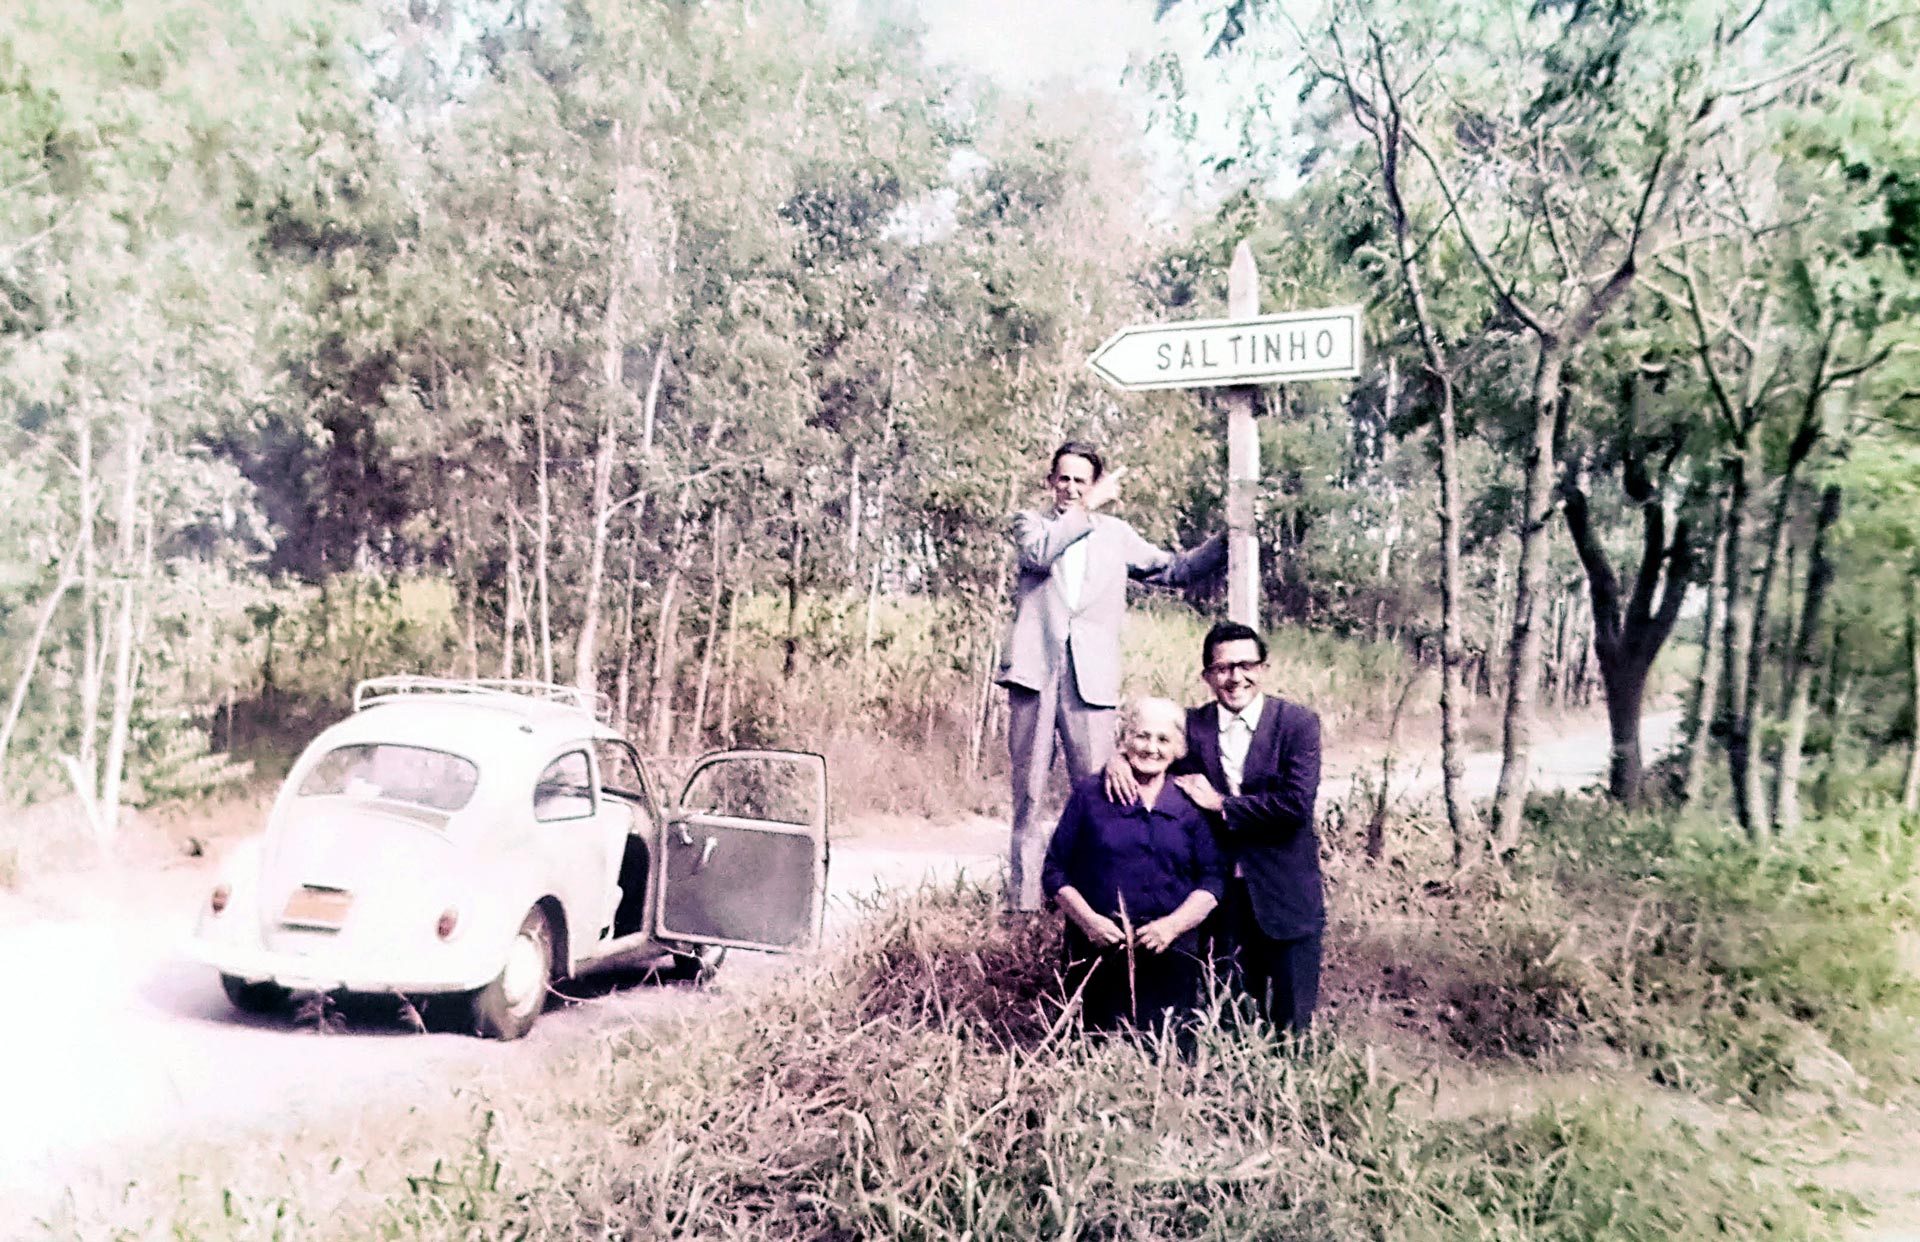 Com os pais junto a uma placa indicando a direção de sua cidade natal Saltinho antigo distrito de Sorocaba emancipado em 1991